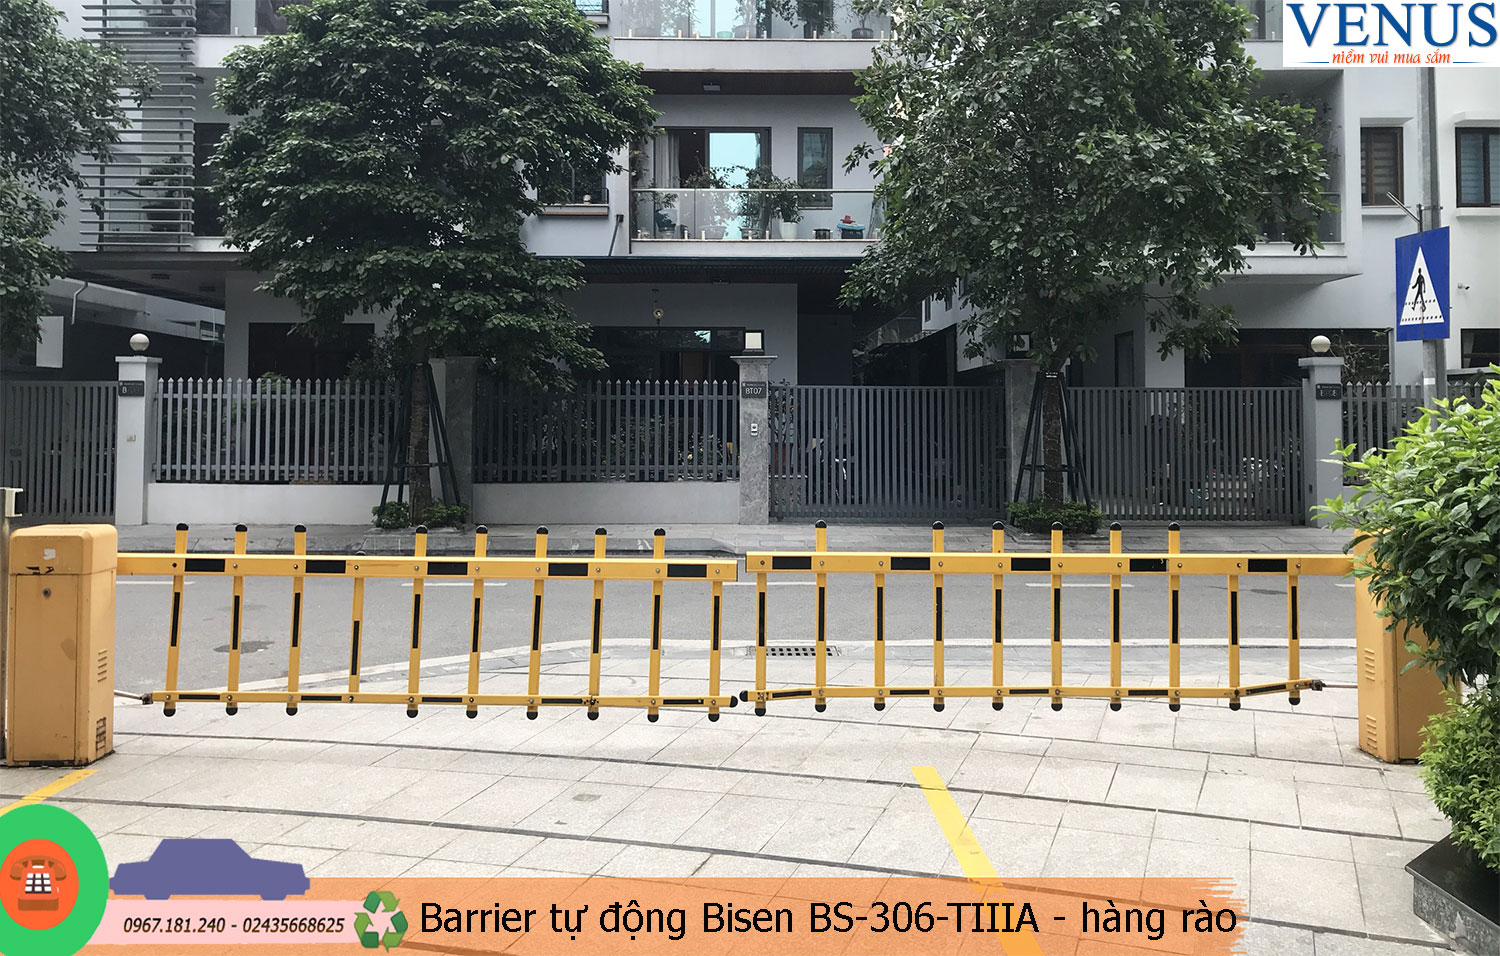 Ảnh Cổng Barrier tự động BS-306-TIIIA giá rẻ